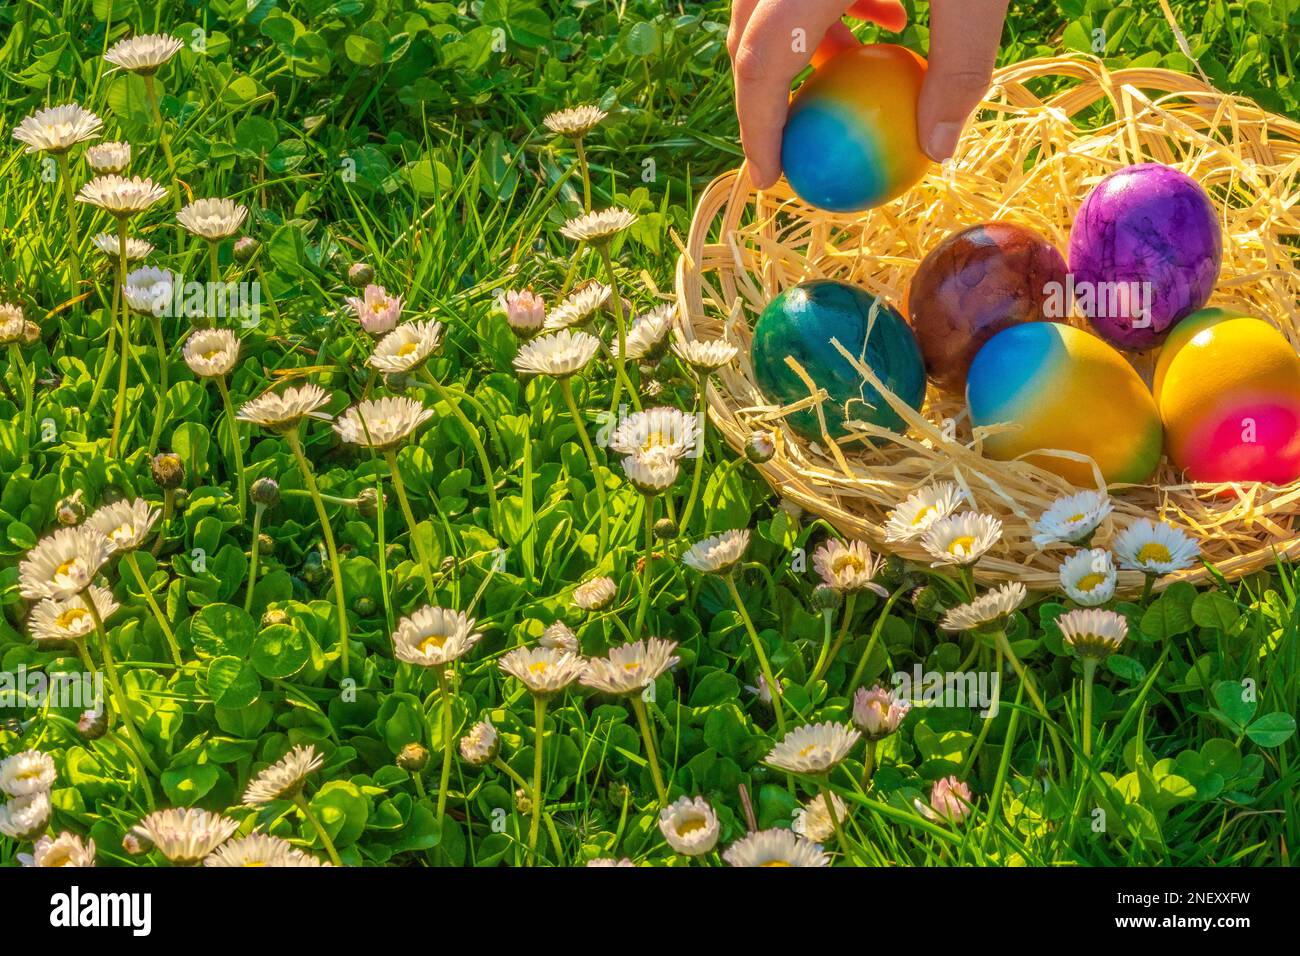 Caccia all'uovo di Pasqua. Raccolta di uova da parte di children.Childs mano mette le uova colorate in un cestino di vimini in un prato di primavera con margherite. Foto Stock